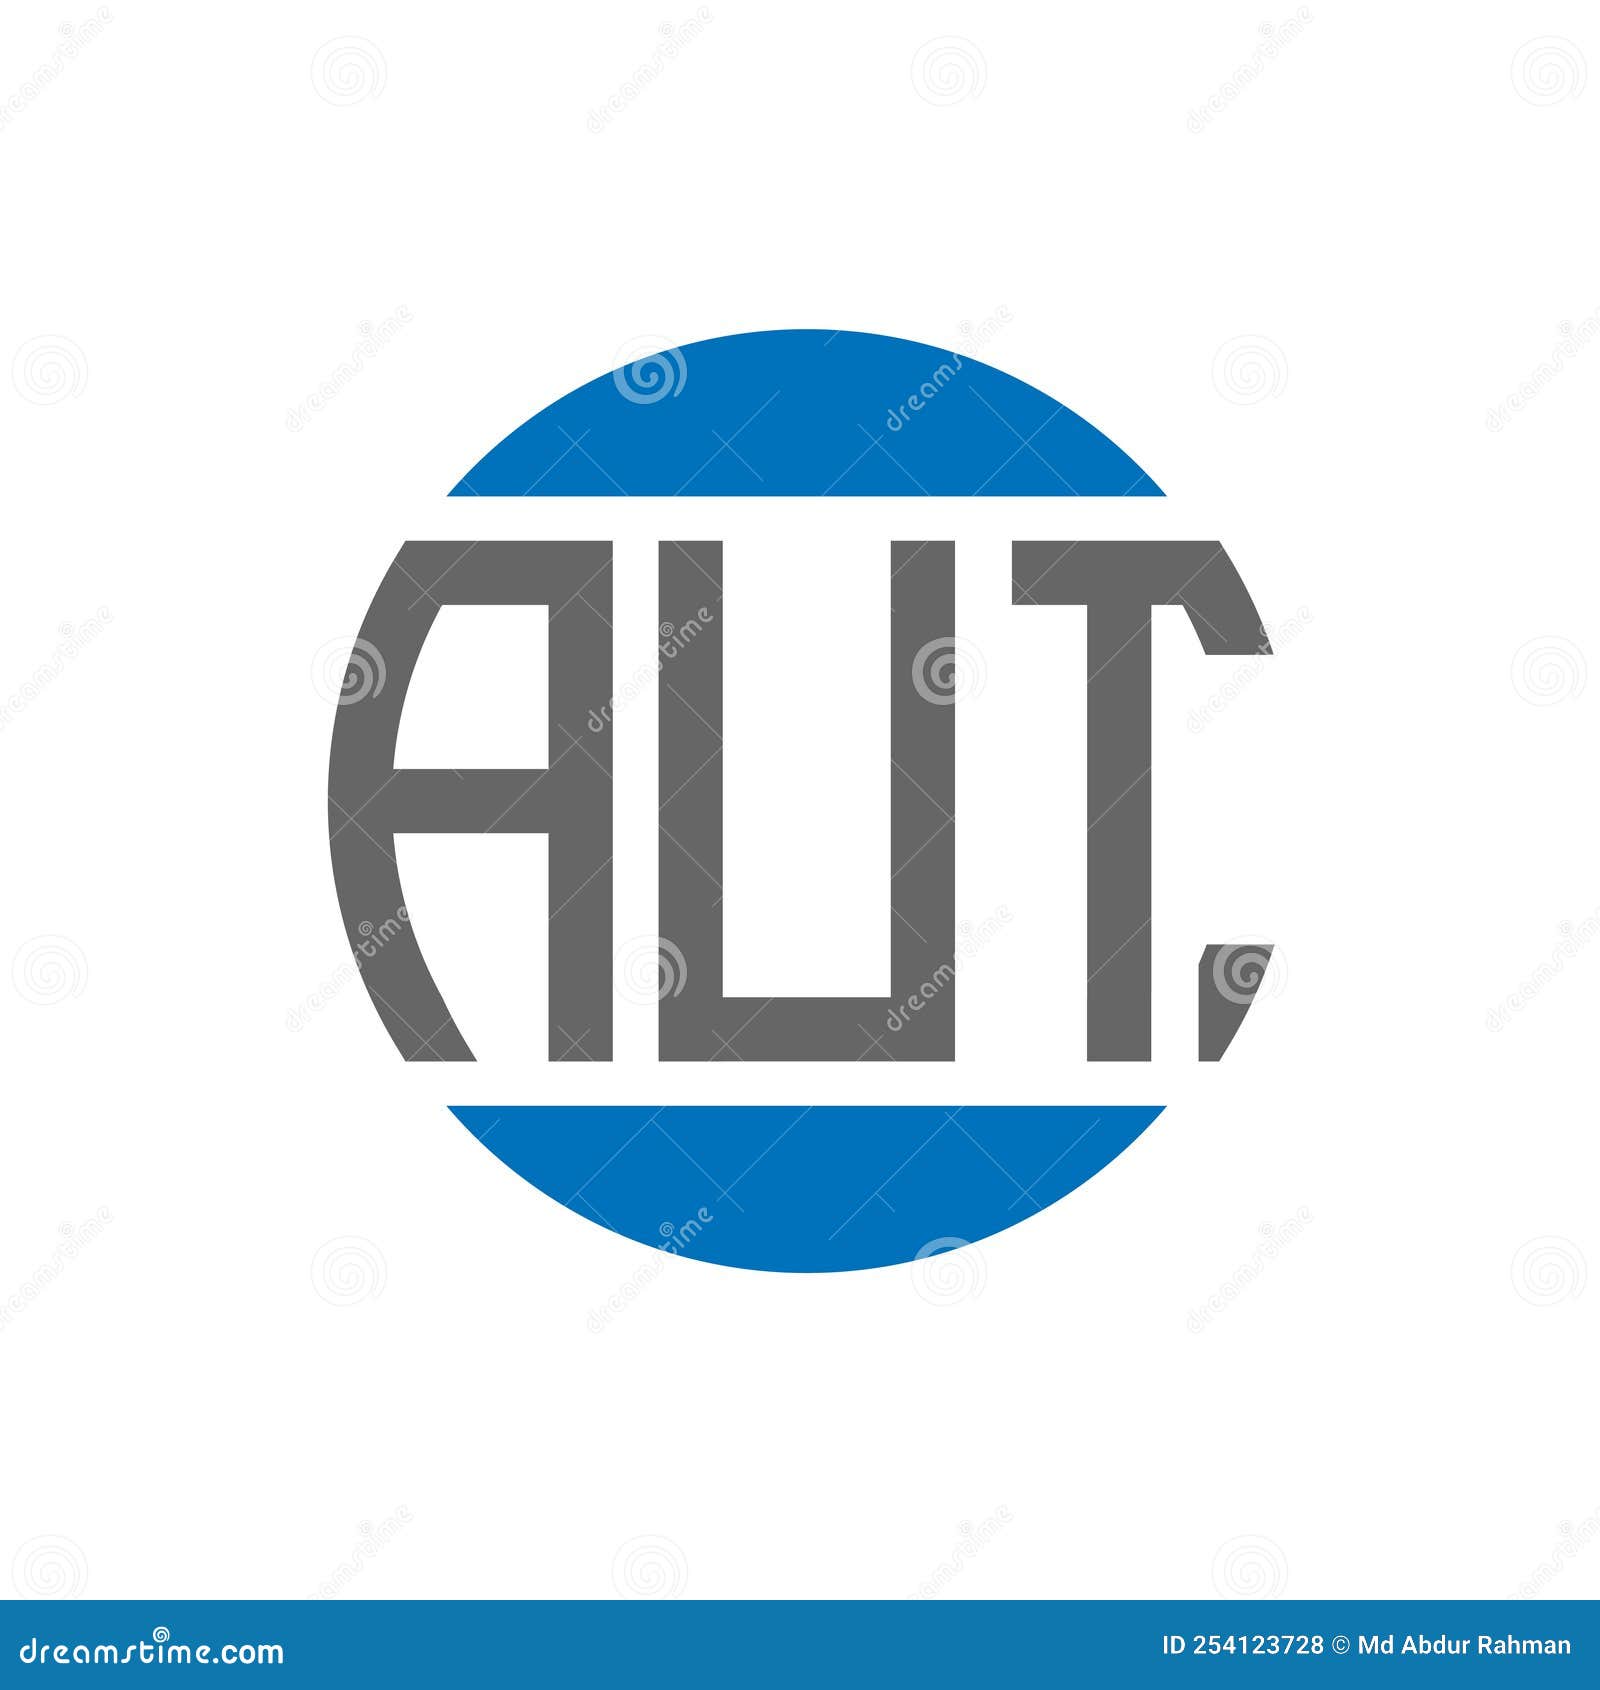 aut letter logo  on white background. aut creative initials circle logo concept.